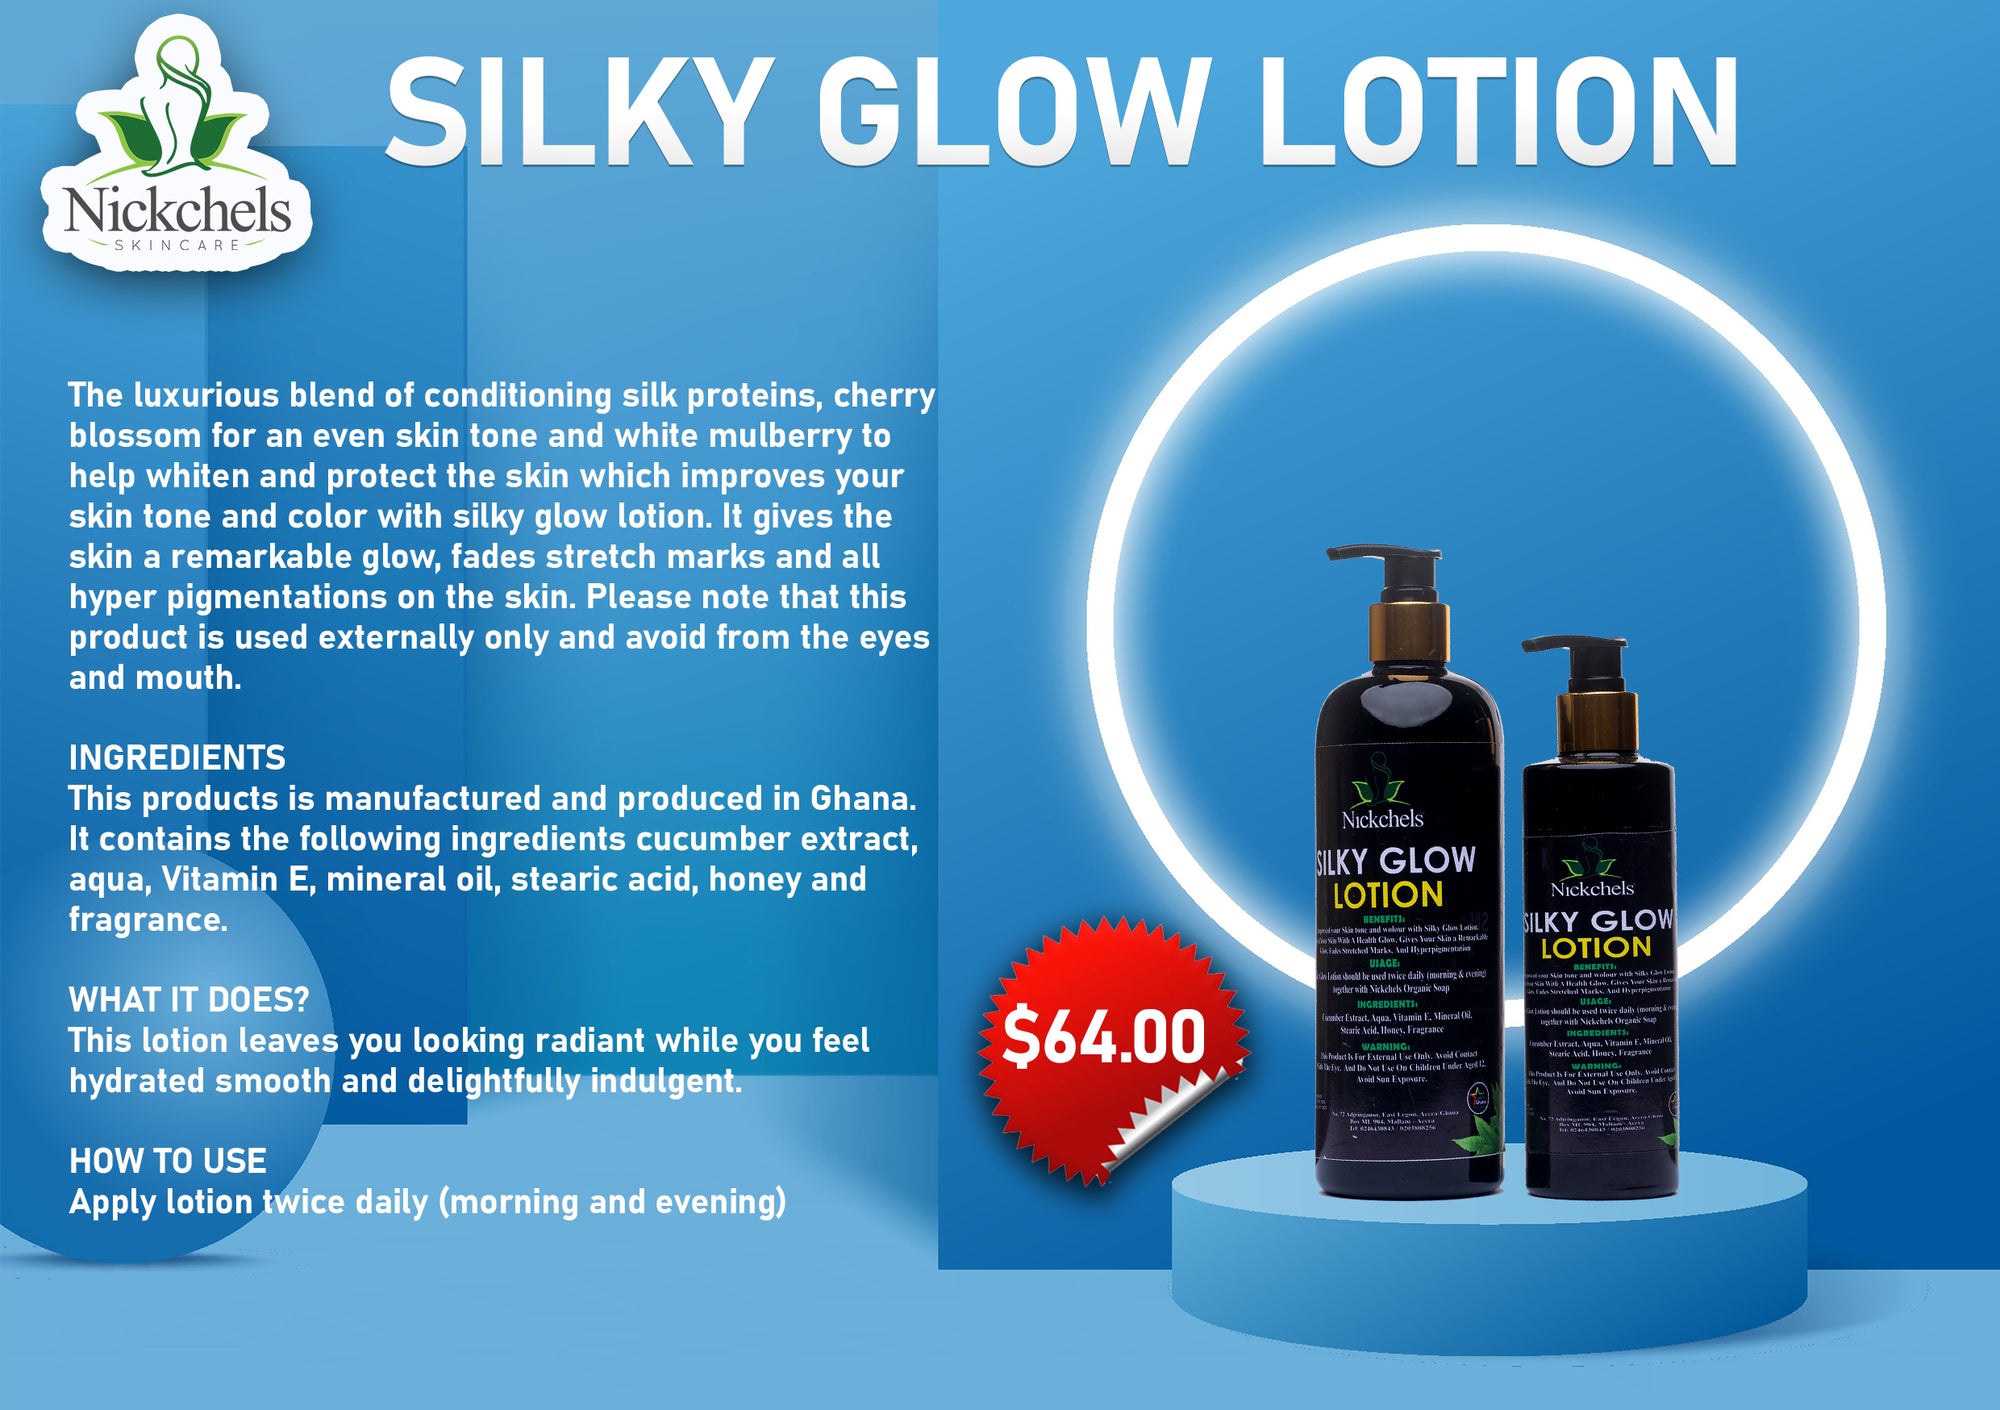 Silky Glow Lotion